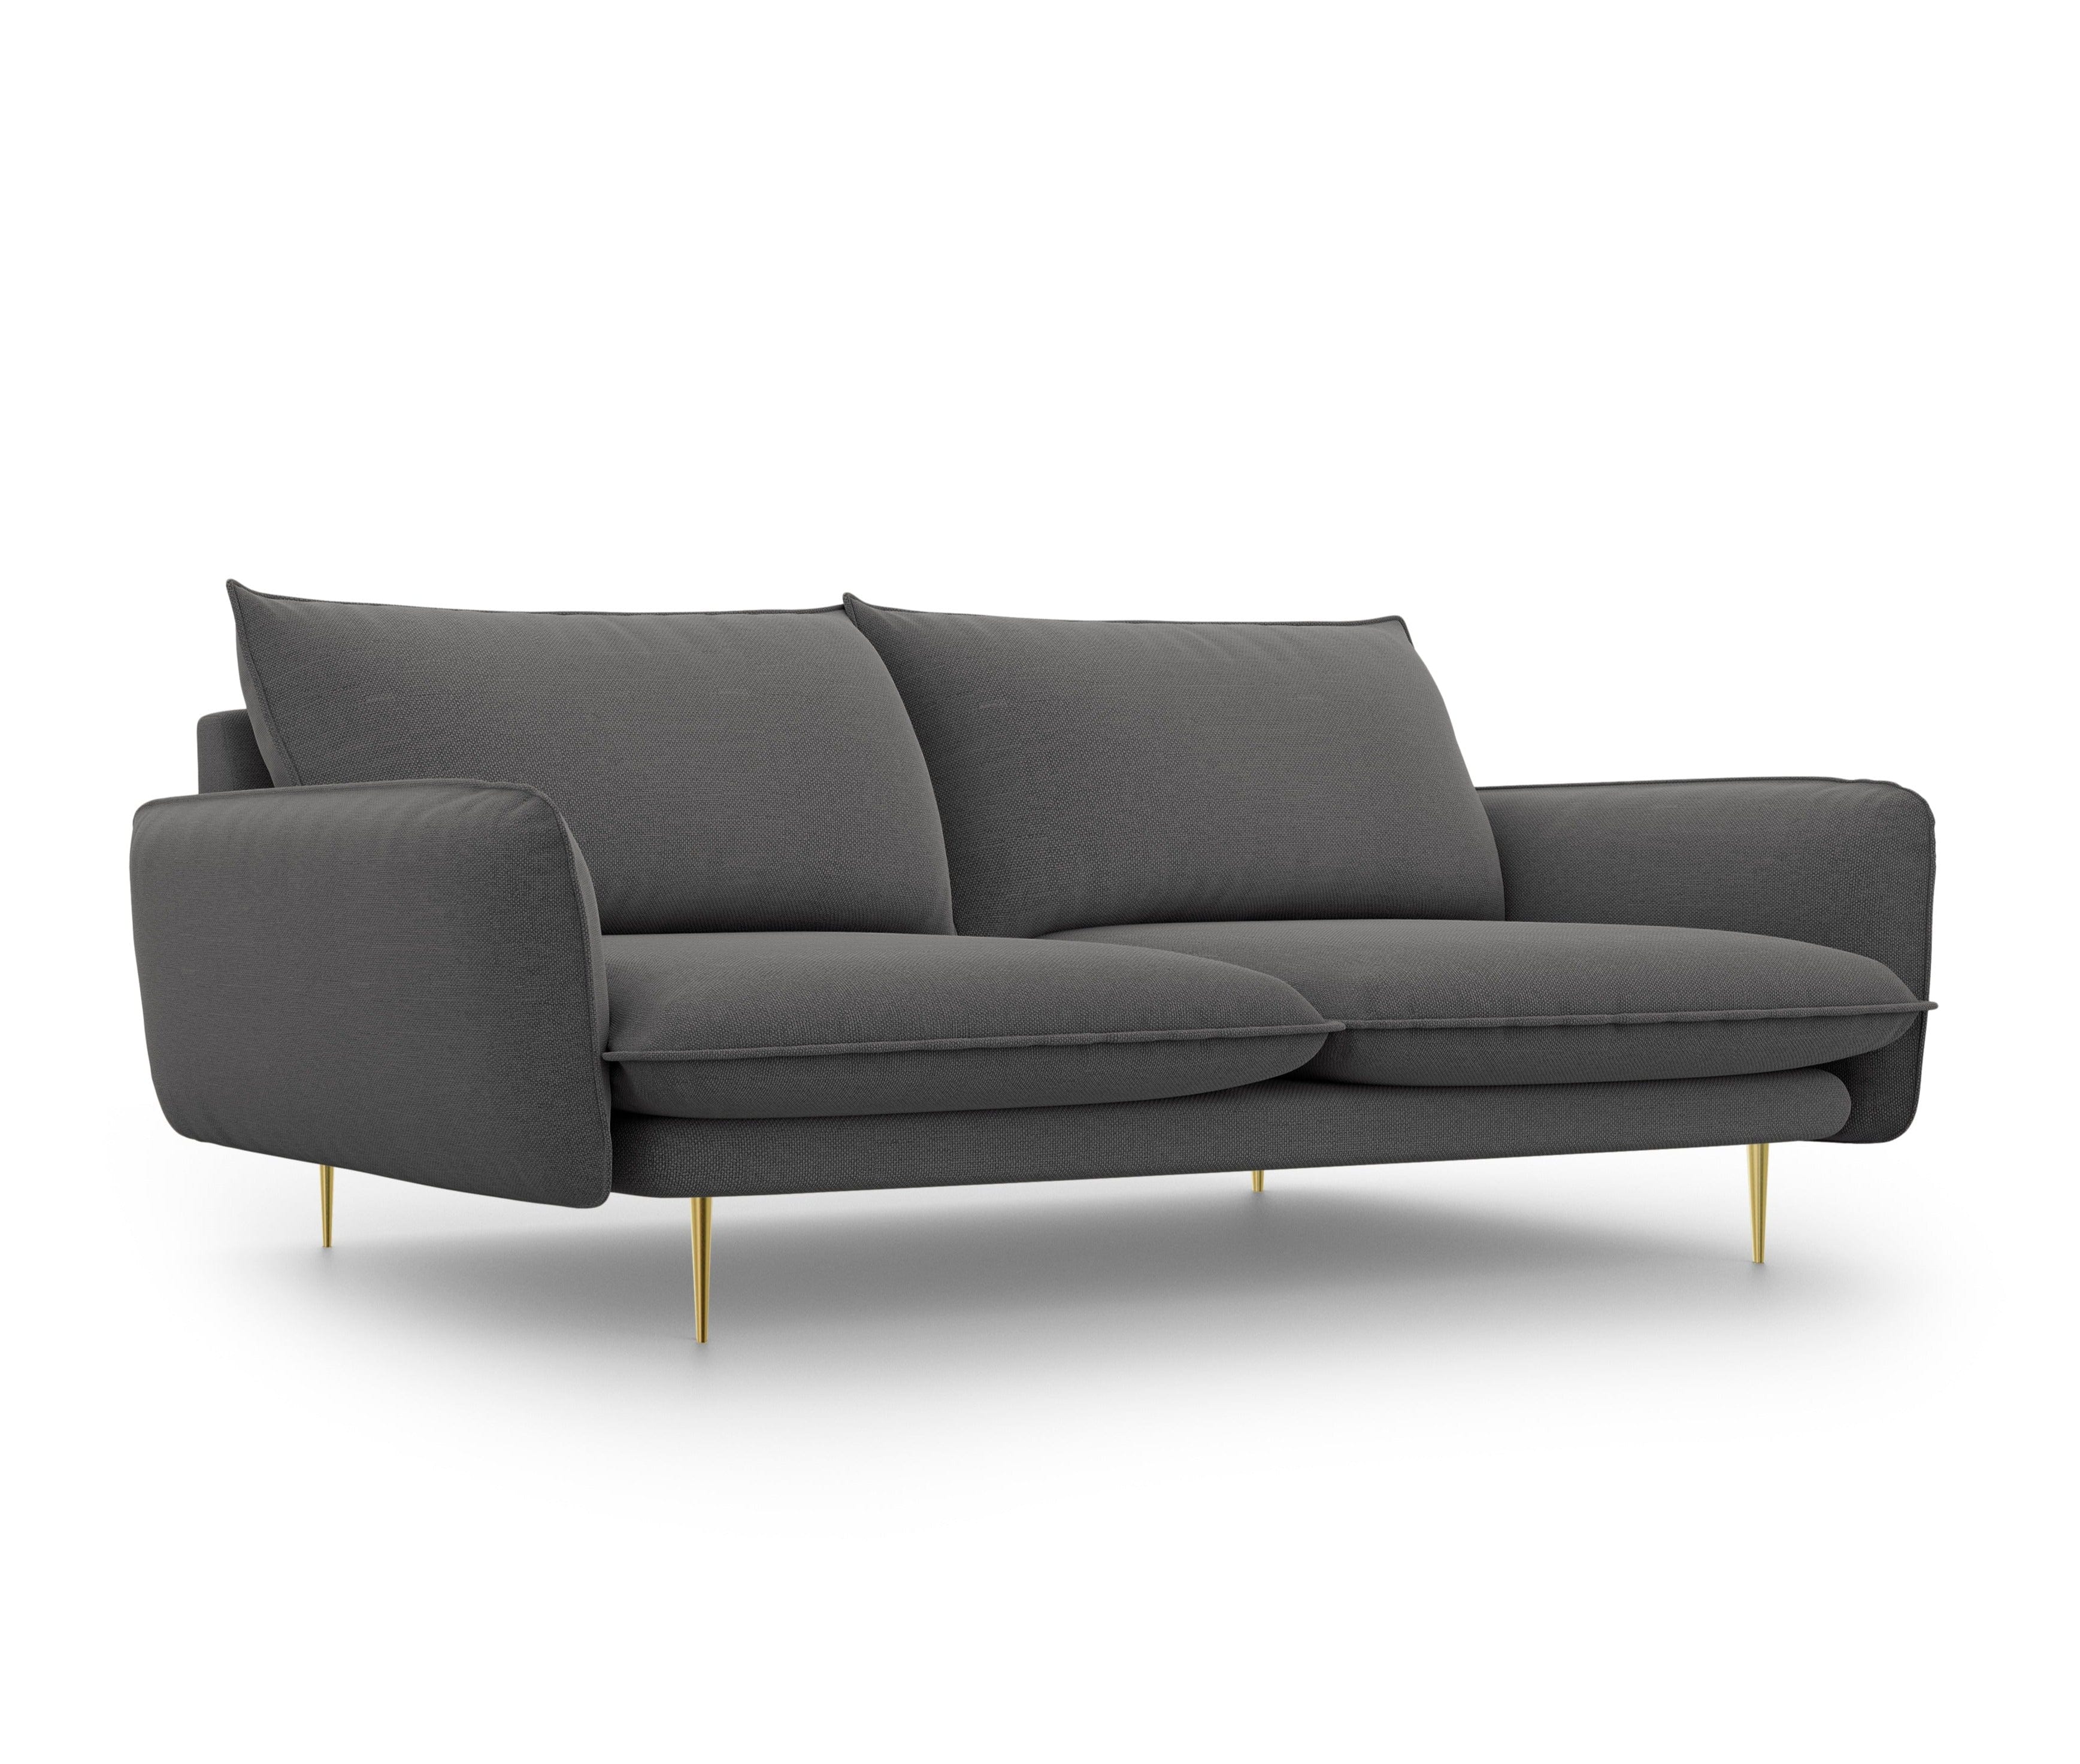 4-Sitzer-Sofa VIENNA dunkelgrau mit goldenem Untergestell